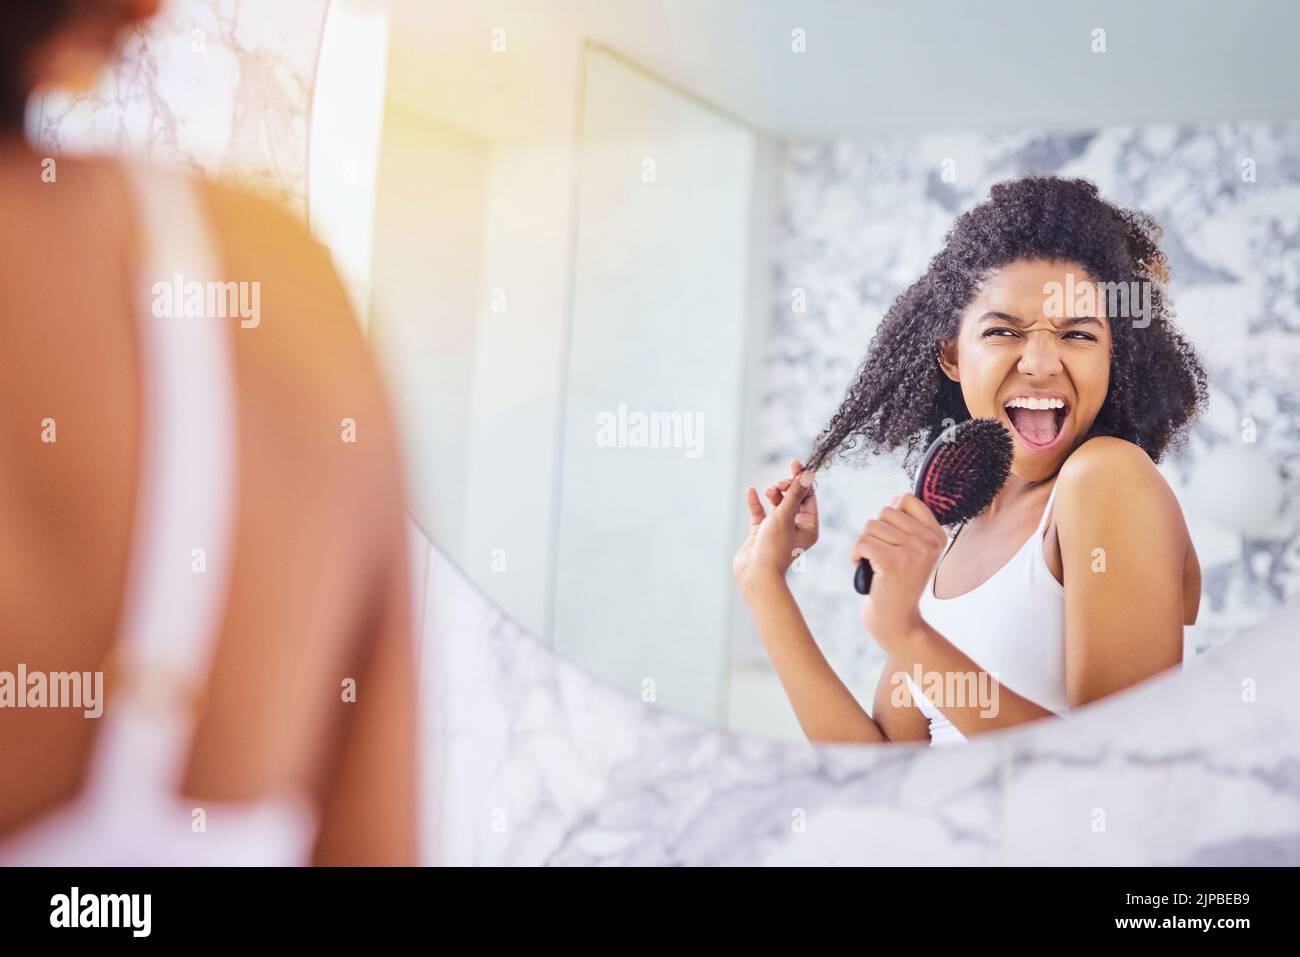 Fühlen Sie sich fabelhaft, sehen Sie fabelhaft aus. Eine attraktive junge Frau singt beim Haarbürsten im Badezimmer zu Hause. Stockfoto